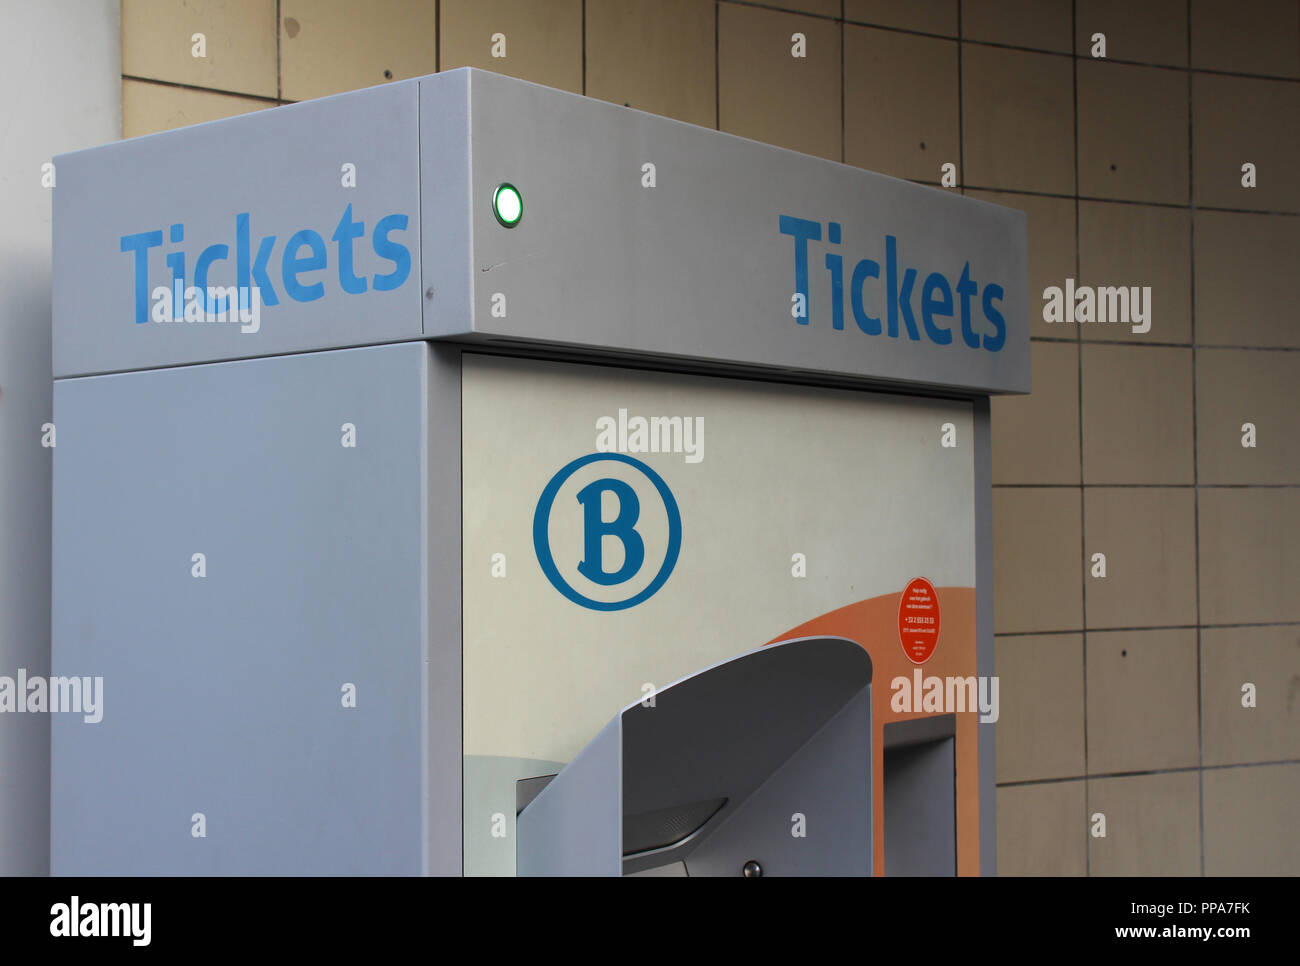 AALST, Belgien; 20. JANUAR 2018: Ein automatisches Ticket Automaten für das Schienennetz von Belgien, international bekannt als Sncb. Stockfoto